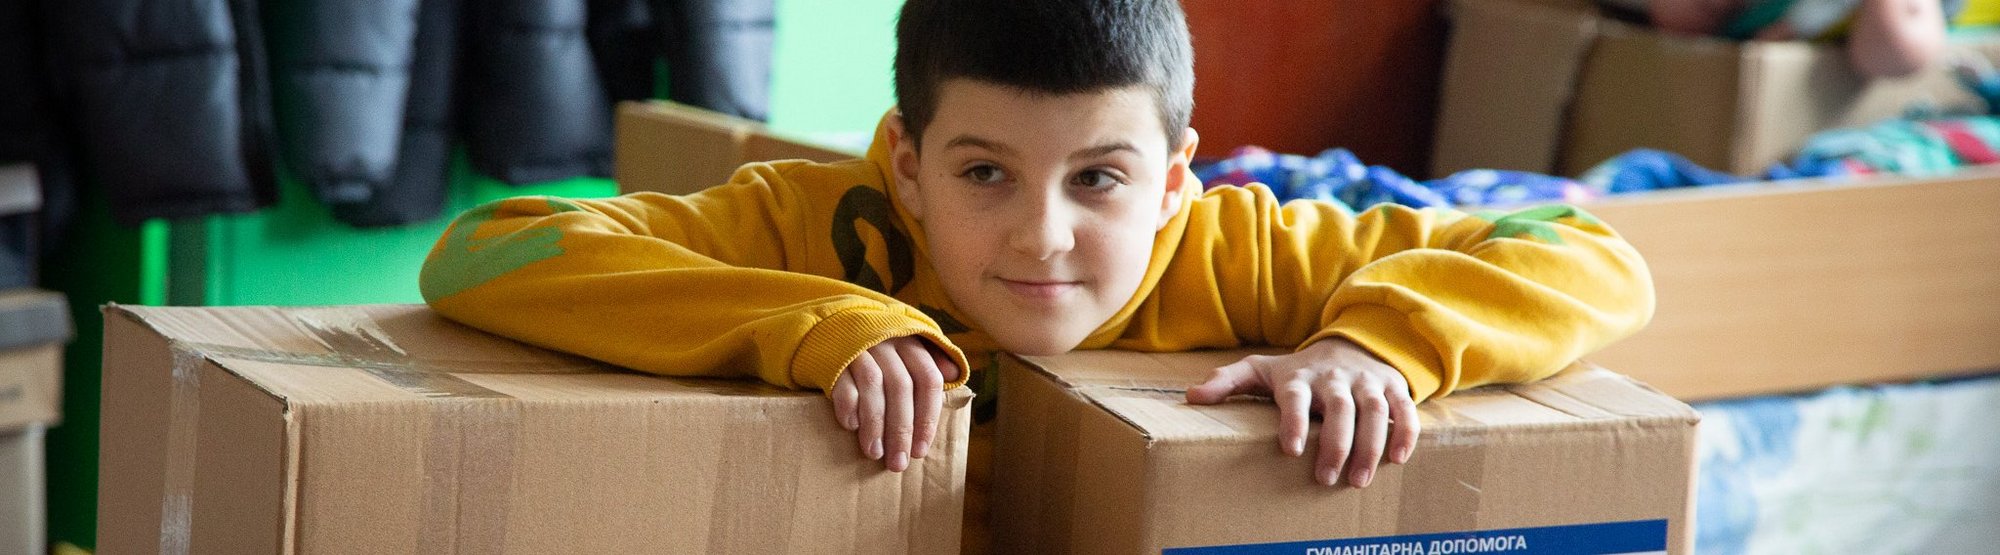 Kind mit Hilfspaketen Jahrestag Ukraine Krieg